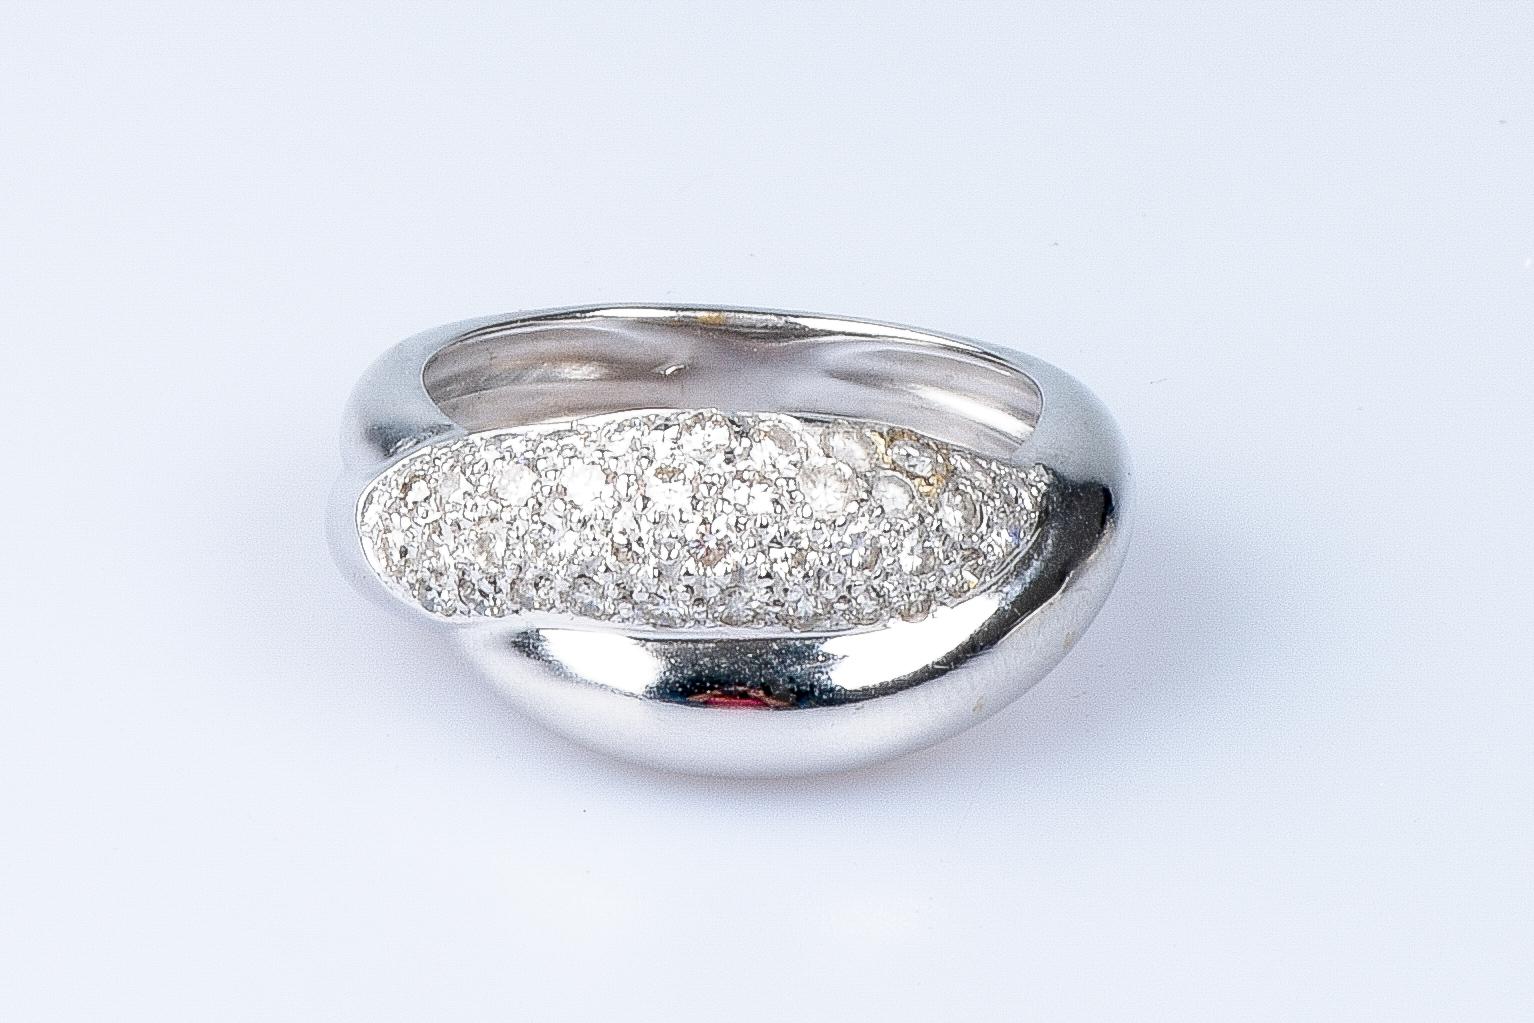 ring aus 18 Karat Weißgold mit 41 runden Diamanten im Brillantschliff von 0,70 Karat.

Qualität des Diamanten
Farbe : H
Klarheit : VS2

 Gewicht: 6,60 gr.

Größe : EU : 54  - SP/IT : 14 - US : 7

Abmessungen: 1,06 x 0,46 cm

Das Juwel wird in einer